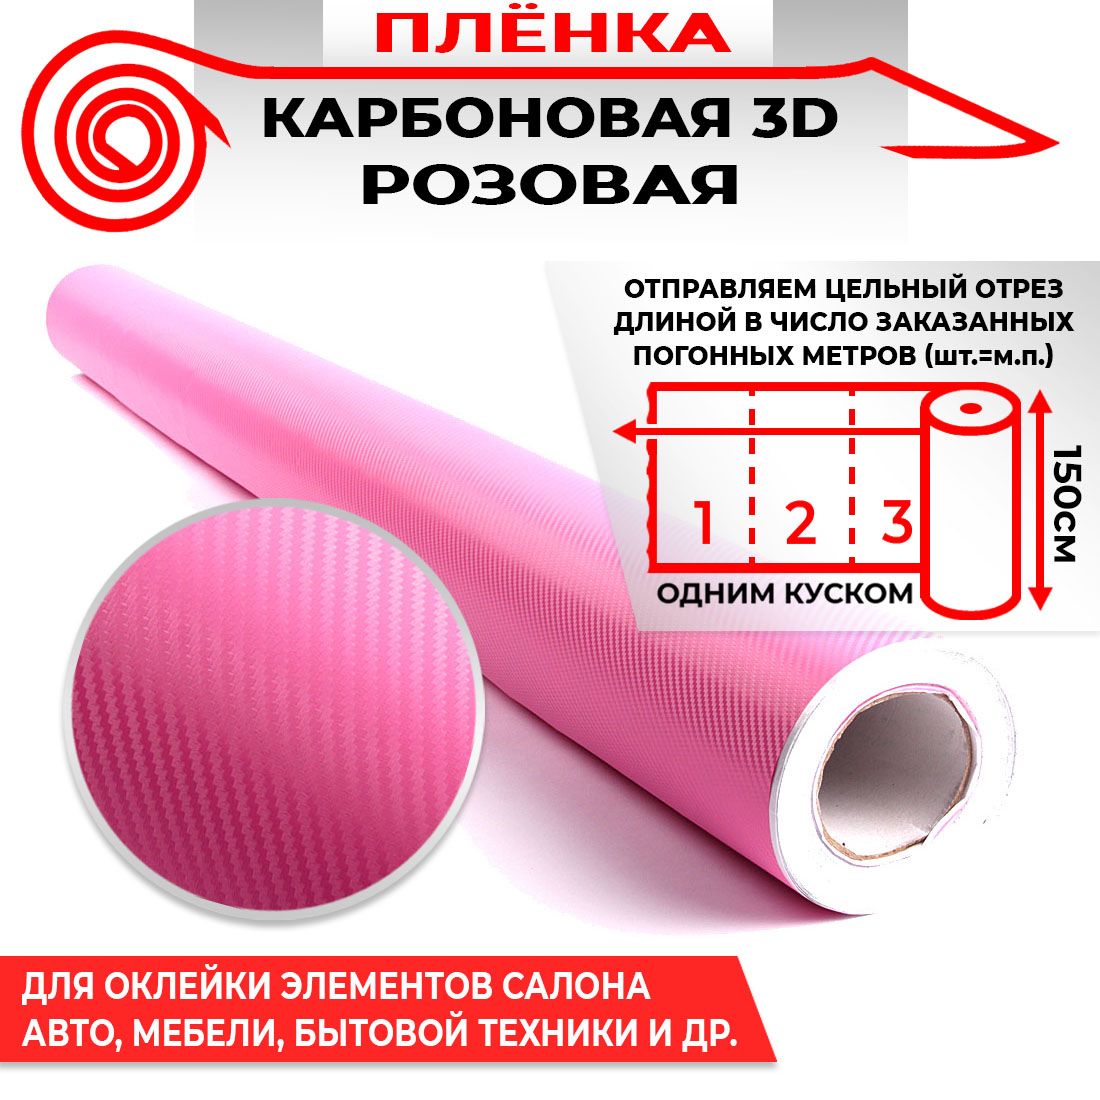 Пленка карбоновая 3D - Розовый 160мкм 1.5м х 1п.м